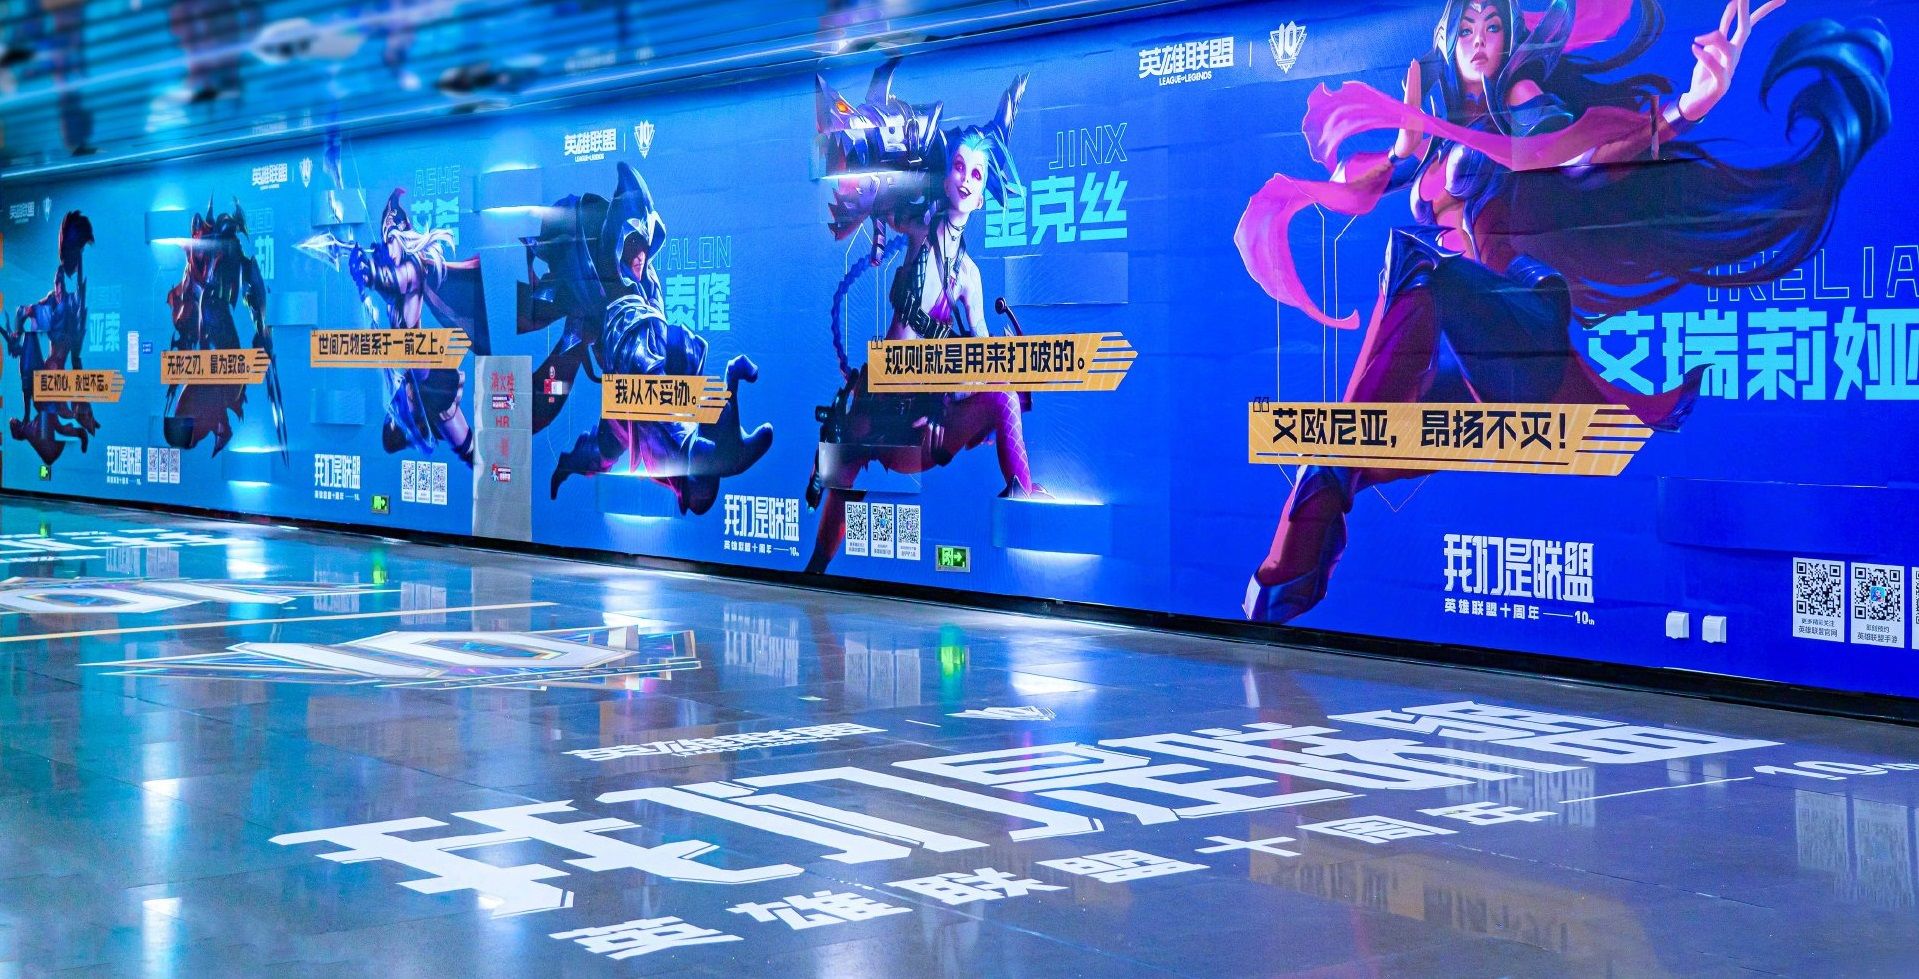 Метро в Китае оформили в стиле League of Legends